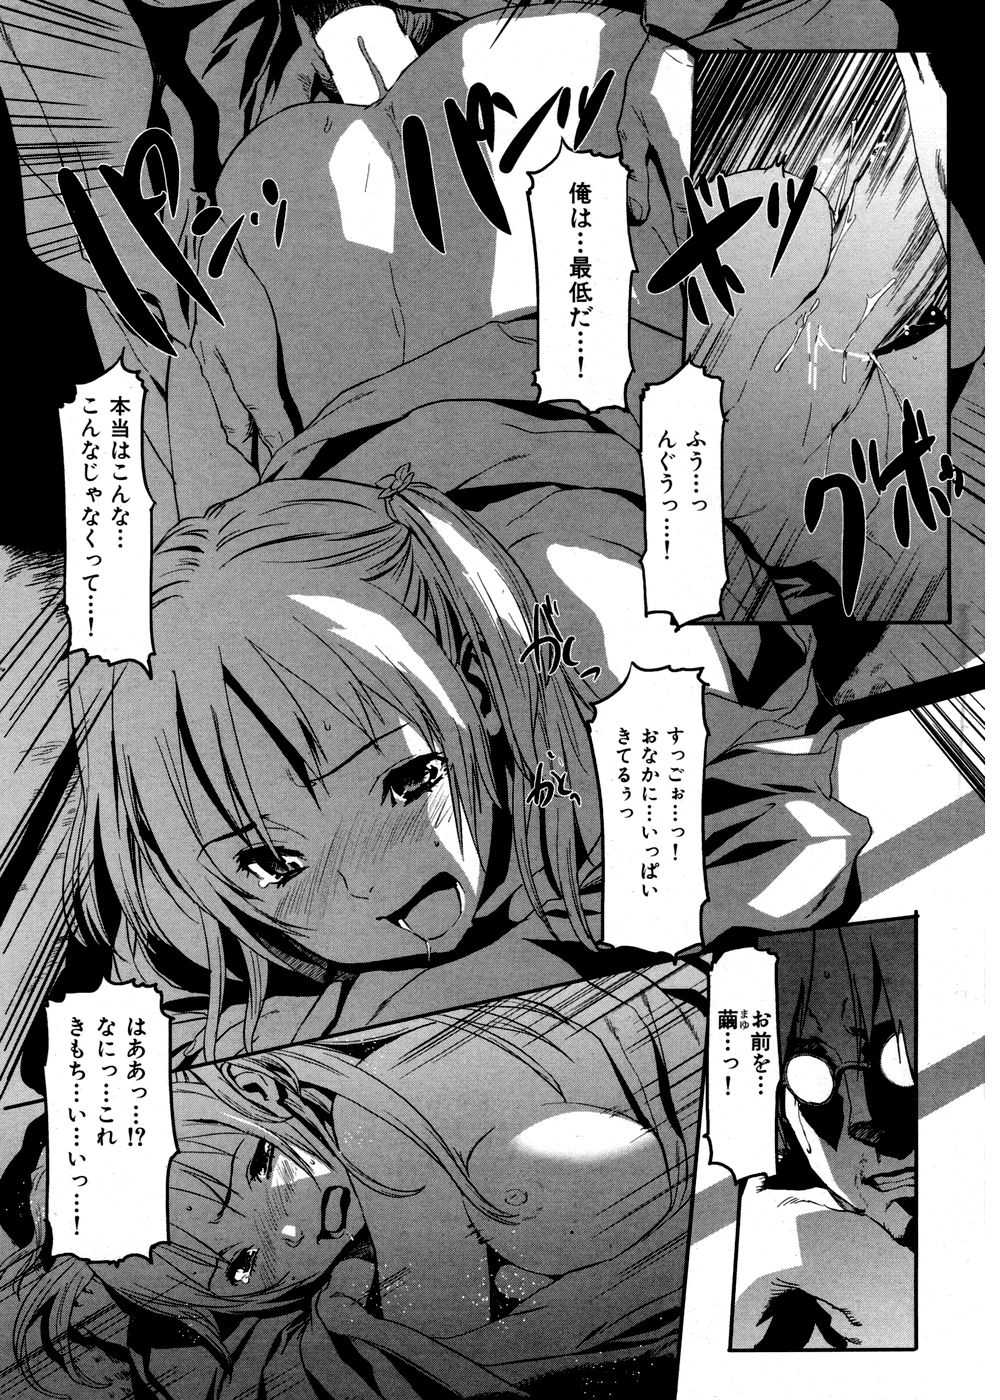 [2007.02.15]Comic Kairakuten Beast Volume 16 